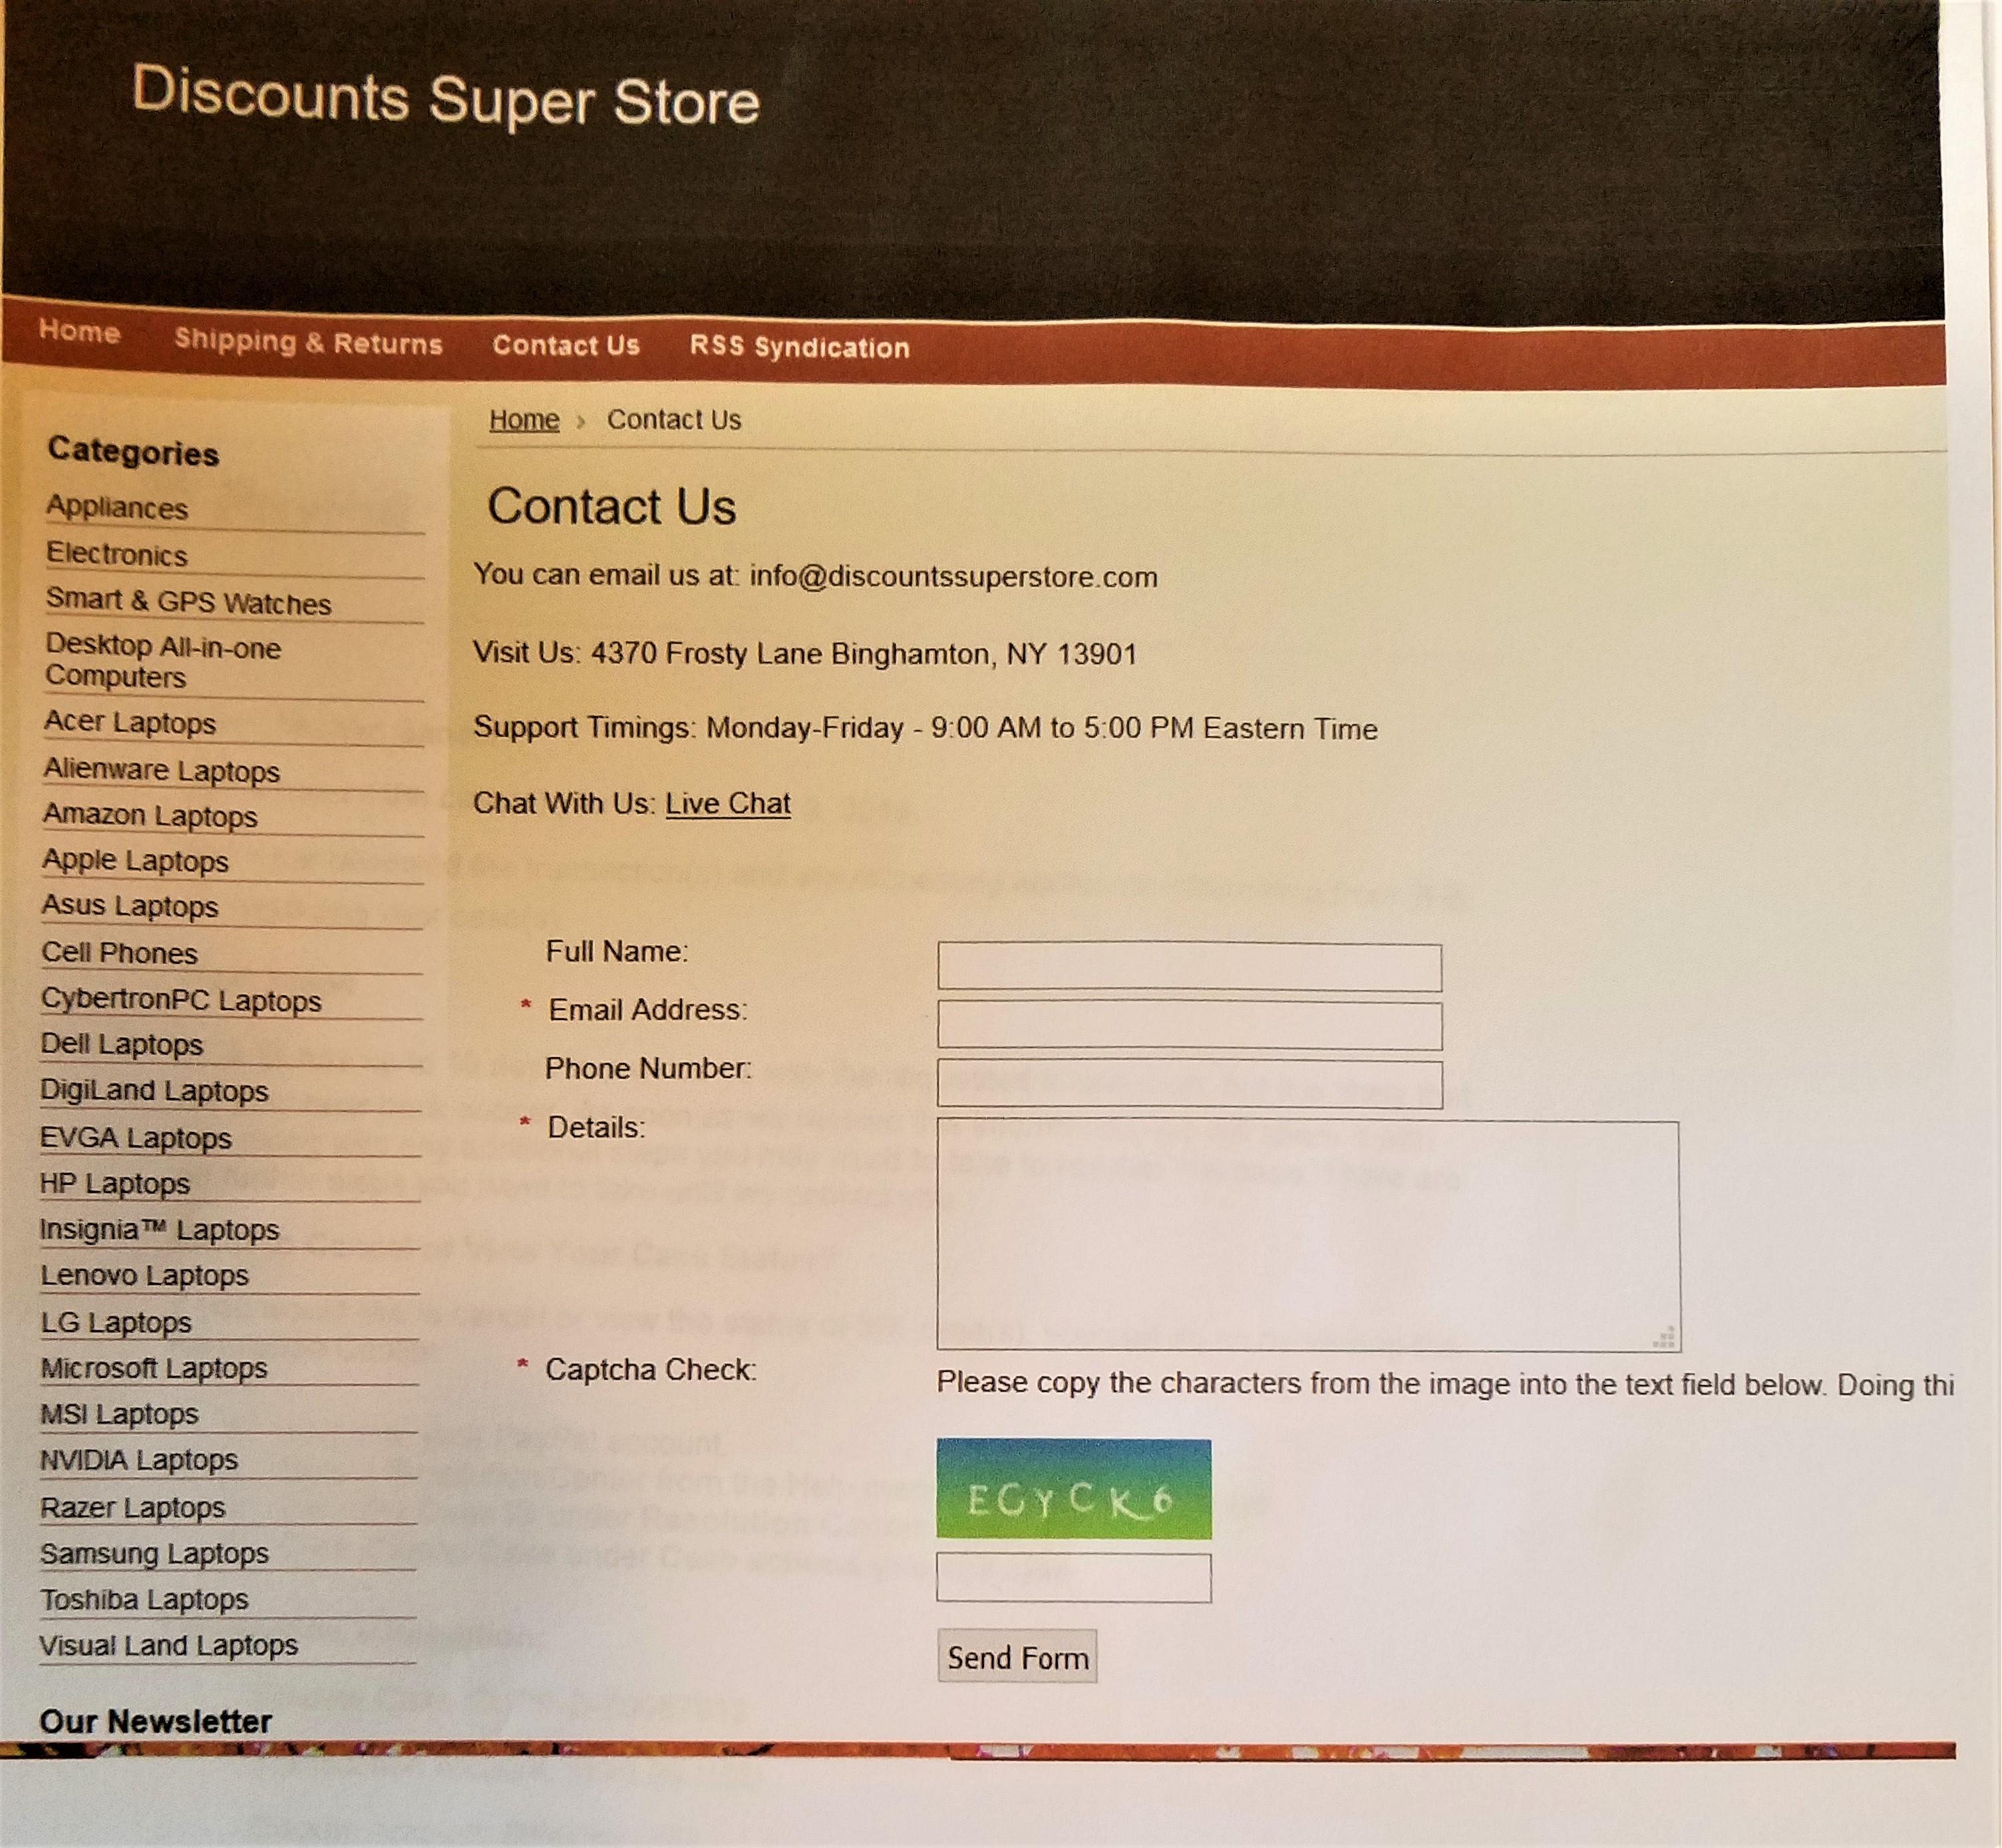 Discount Super Store click "Contact Us"